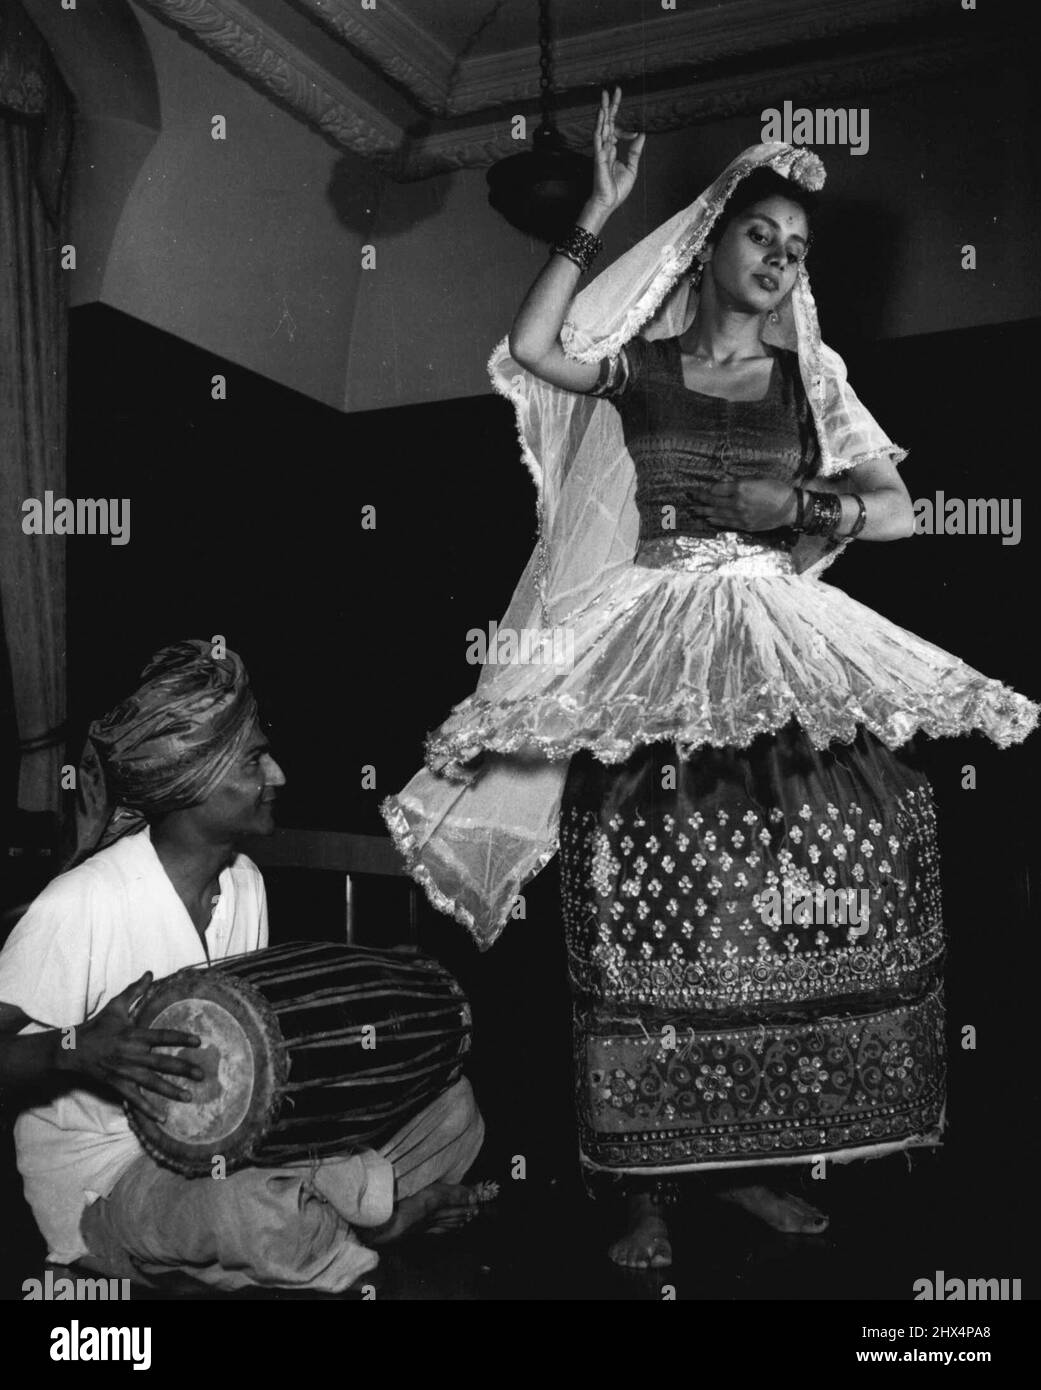 Indische Tänzerin. Zum Trommeln eines indischen Rhythmus tanzend, probt Miss J. Beriera die Schritte, die sie Unternehmen wird, um Geld auf einer Ausstellung in London zu sammeln. Die Relearsal, im India House, setzt einen letzten Glanz auf ein Programm, das arrangiert wurde, um die Arbeit des Bihar (Indien) Food Relief Fund zu unterstützen. Die Show ist eine 'Full Indian Dress'-Affäre. 14. September 1951. (Foto von Daily Mirror). Stockfoto